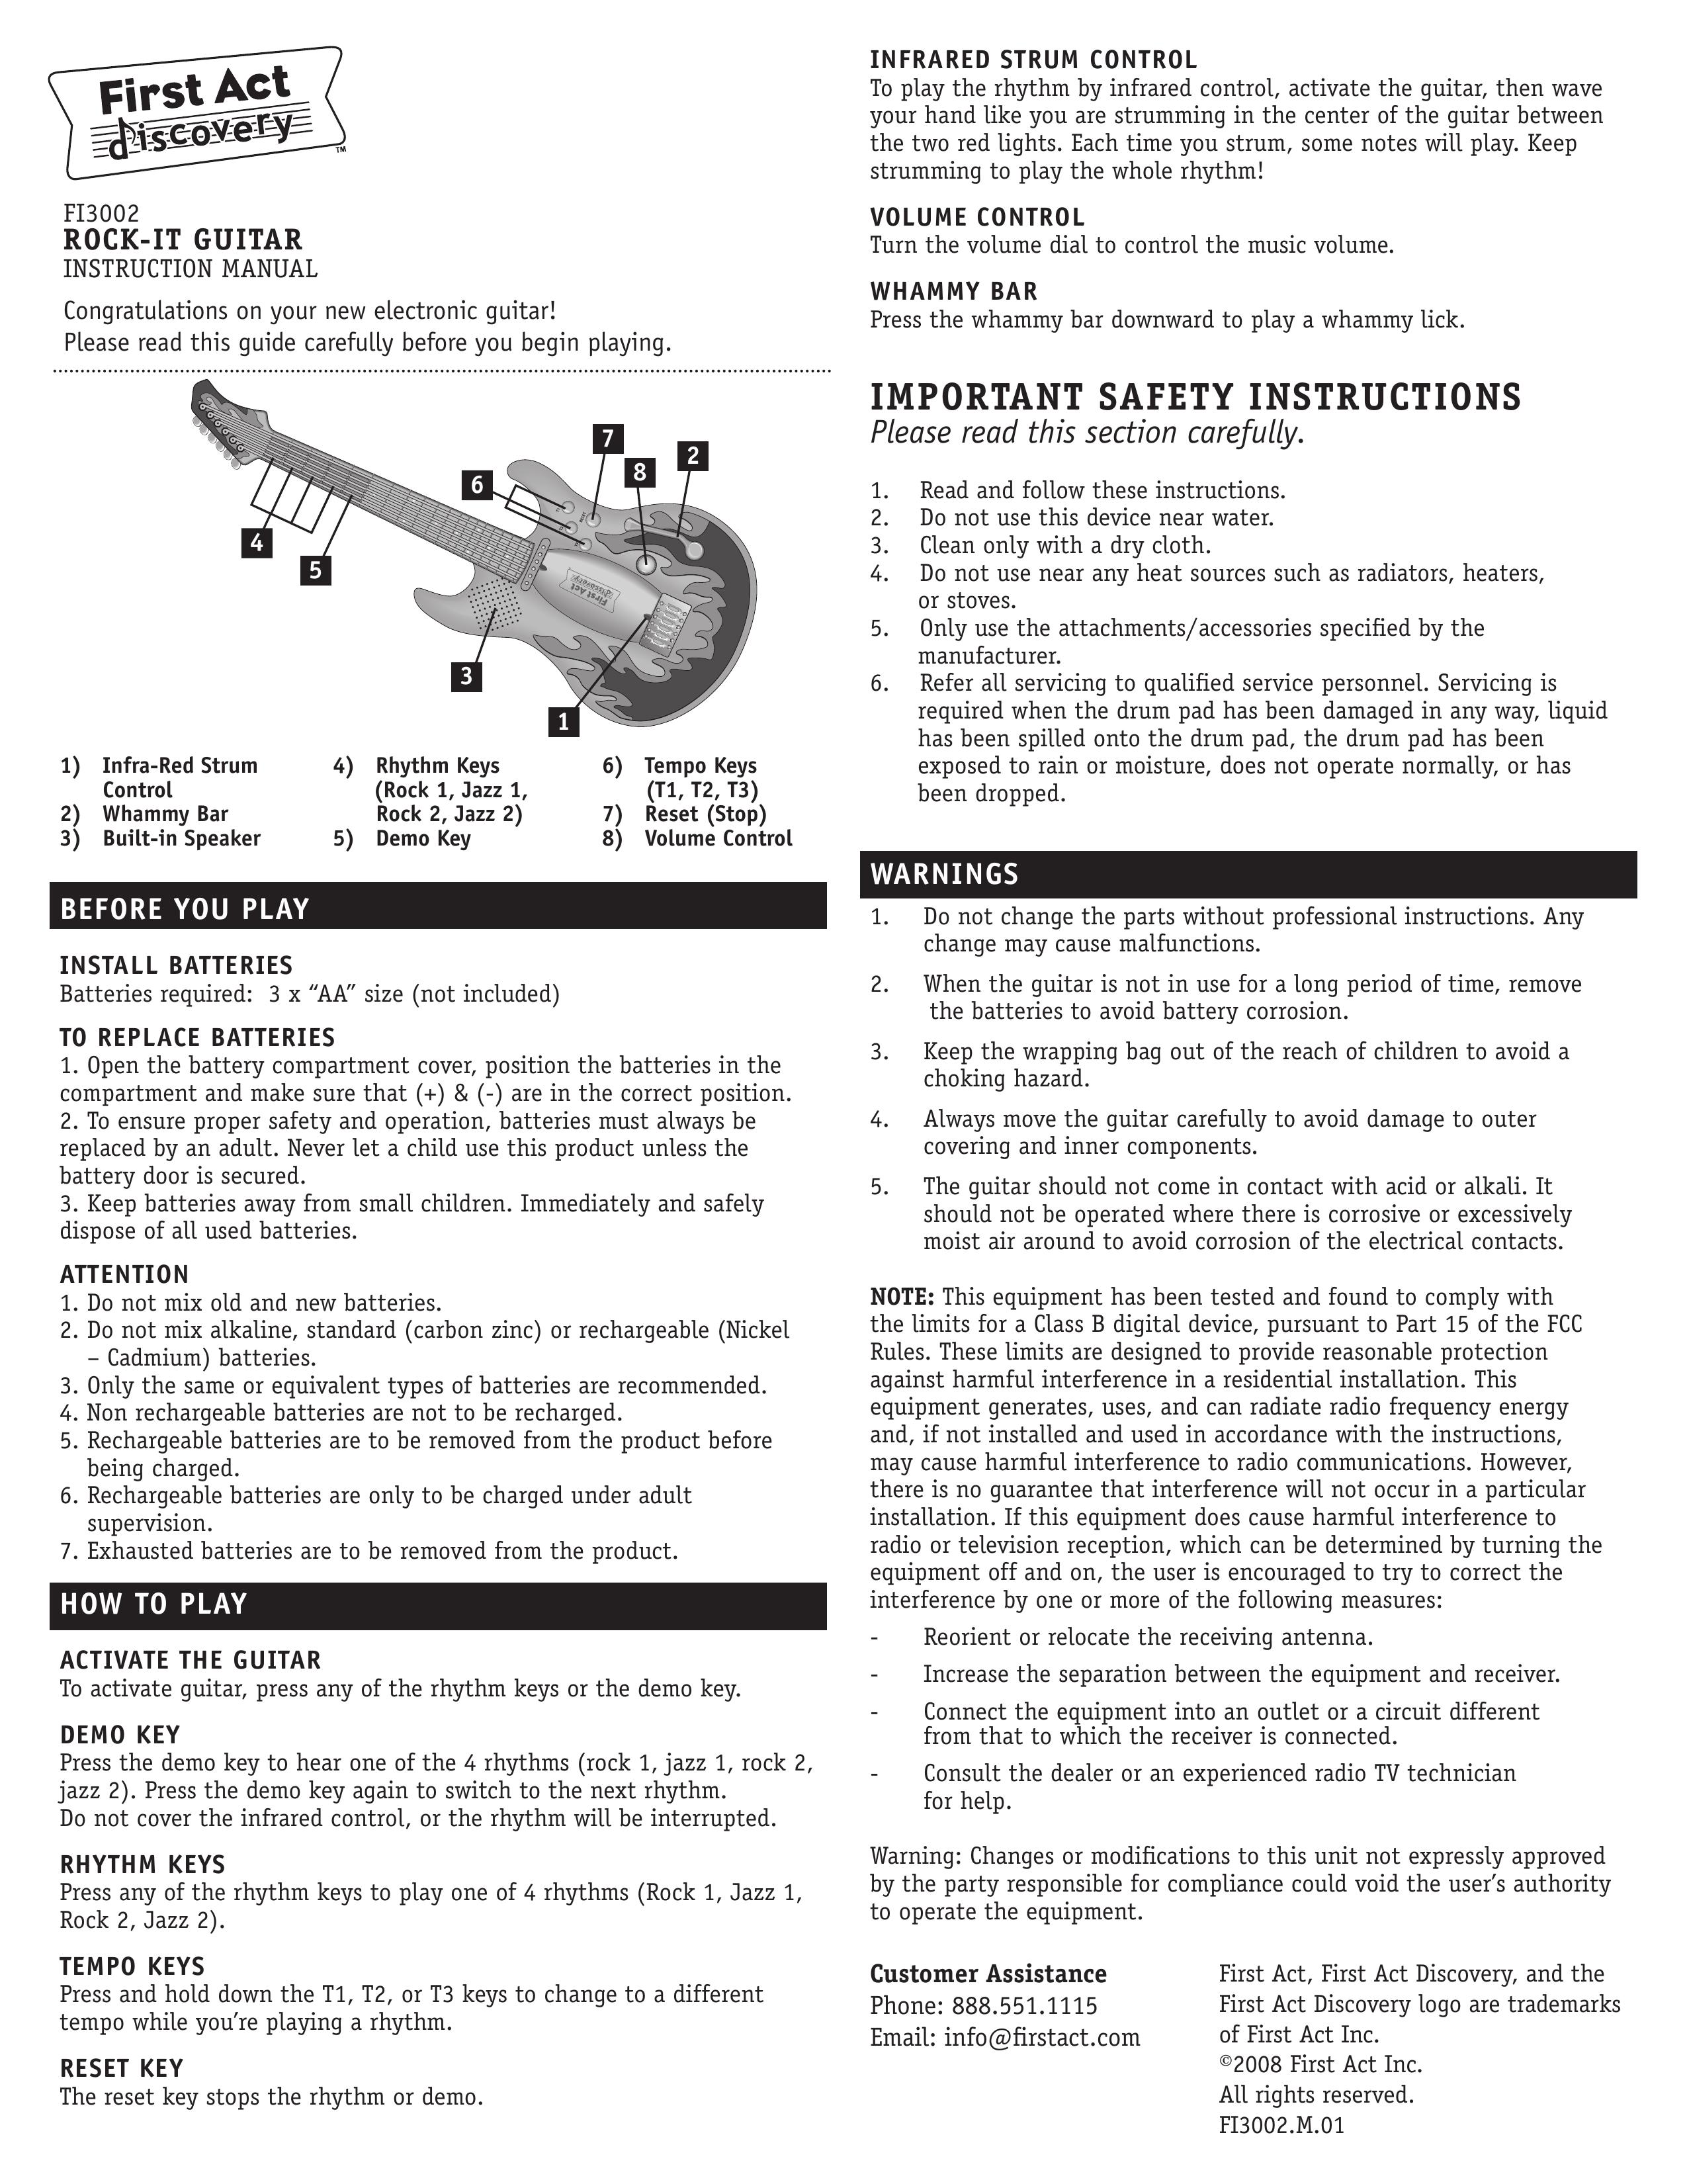 First Act FI3002 Guitar User Manual